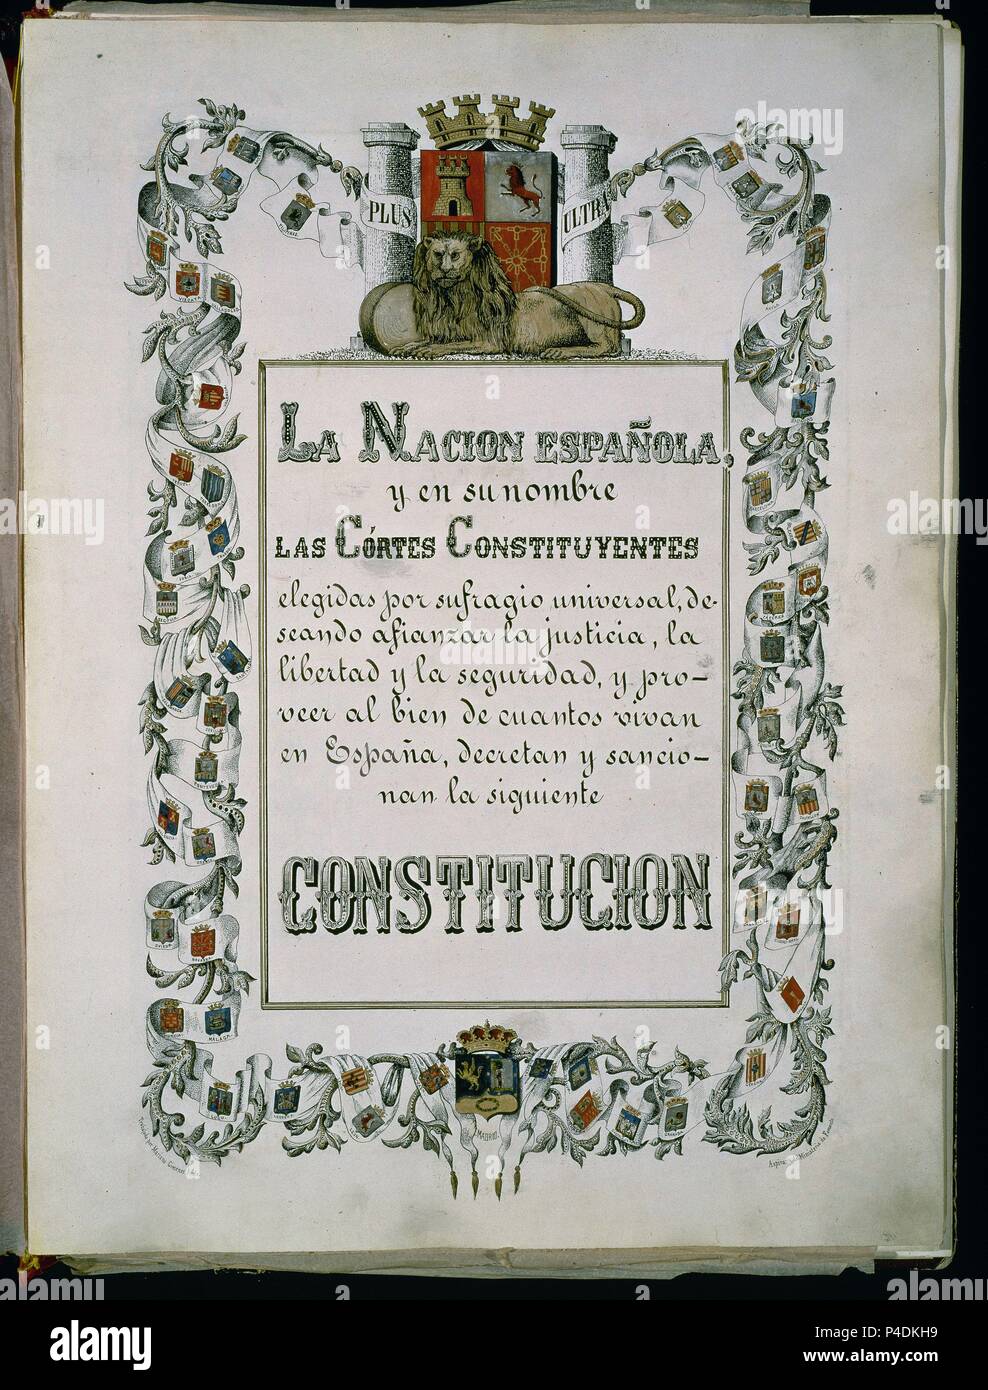 PORTADA DE LA CONSTITUCION DE 1869 - CONSTITUCION QUE MANTENIA LA FORMA  MONARQUICA DEL ESTADO Y EL SISTEMA BICAMERAL. Location: CONGRESO DE LOS  DIPUTADOS-BIBLIOTECA, MADRID, SPAIN Stock Photo - Alamy